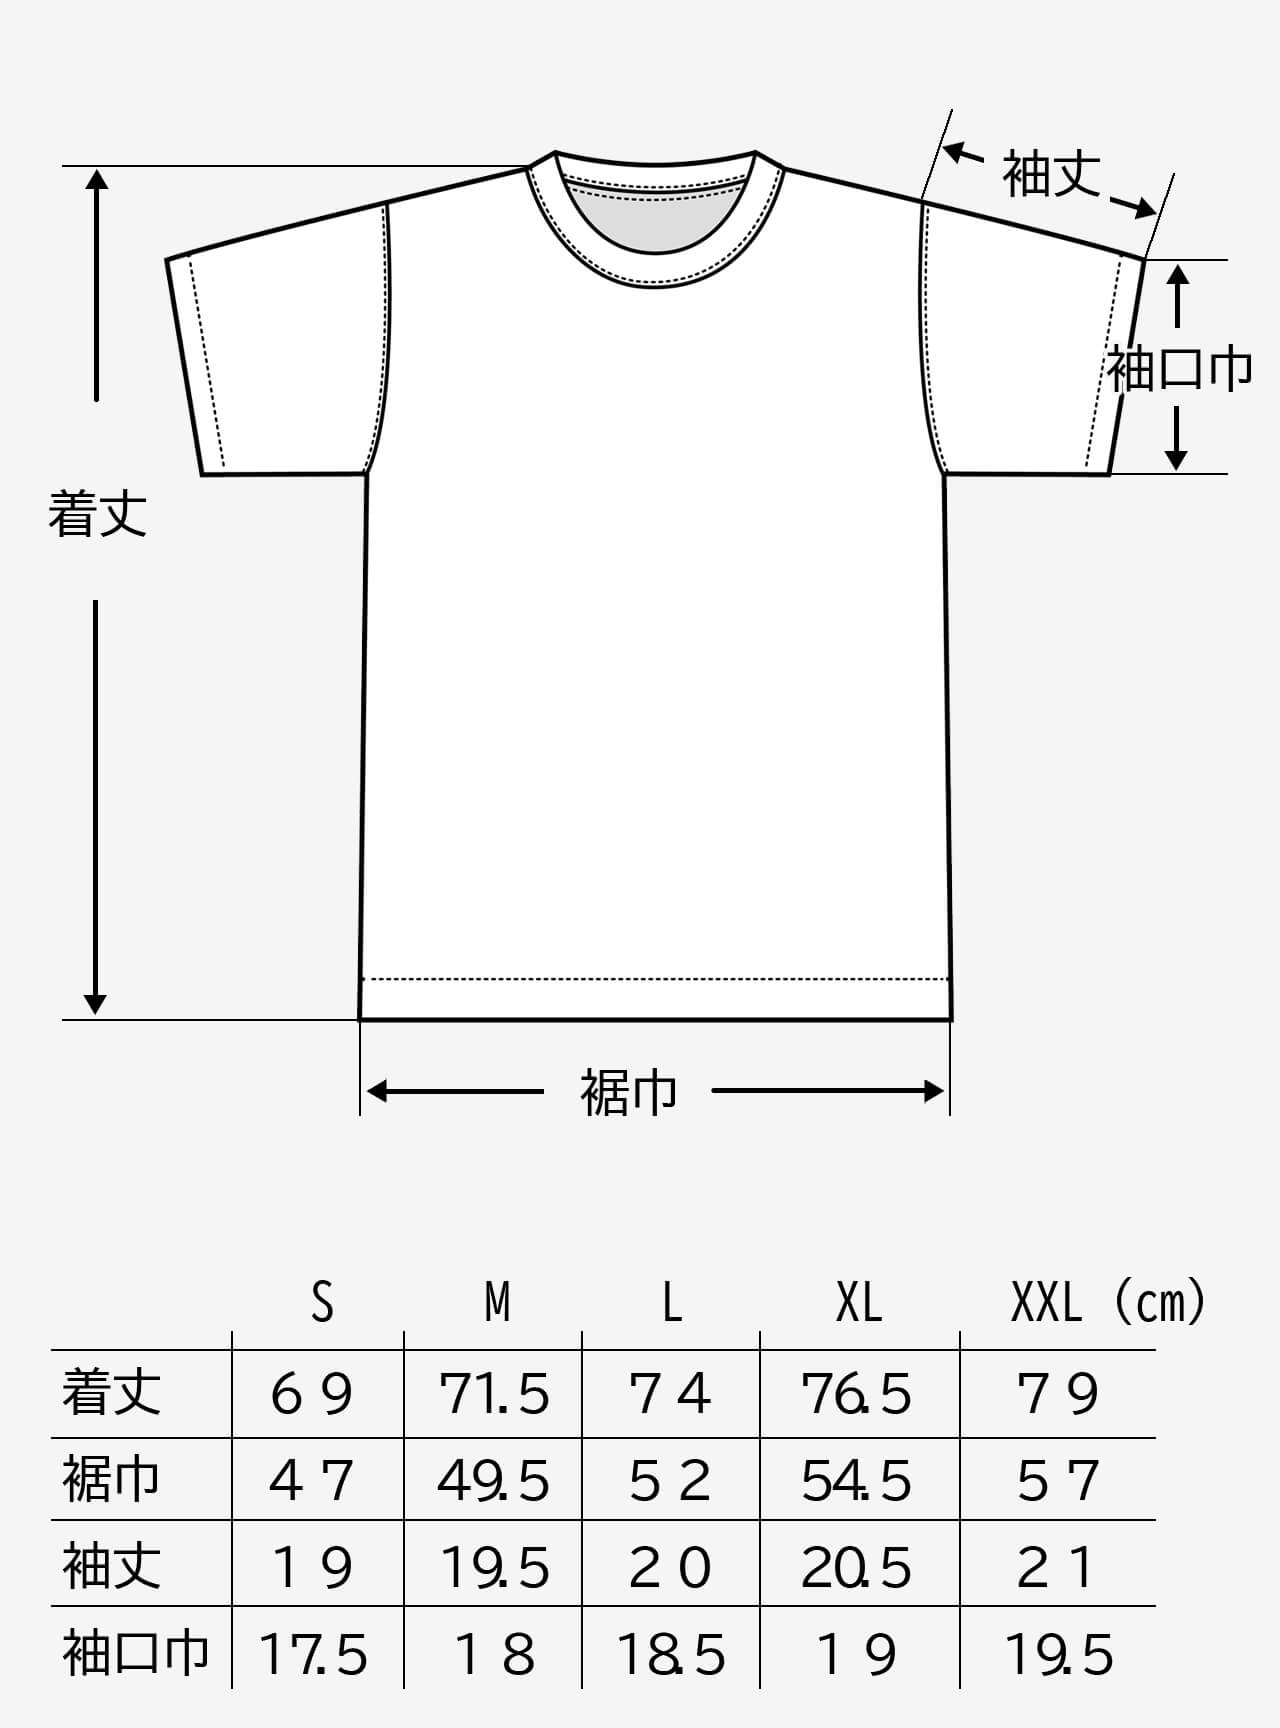 JBBF T-Shirt 黒T 刺繍ｘ背面競技名 黒プリント